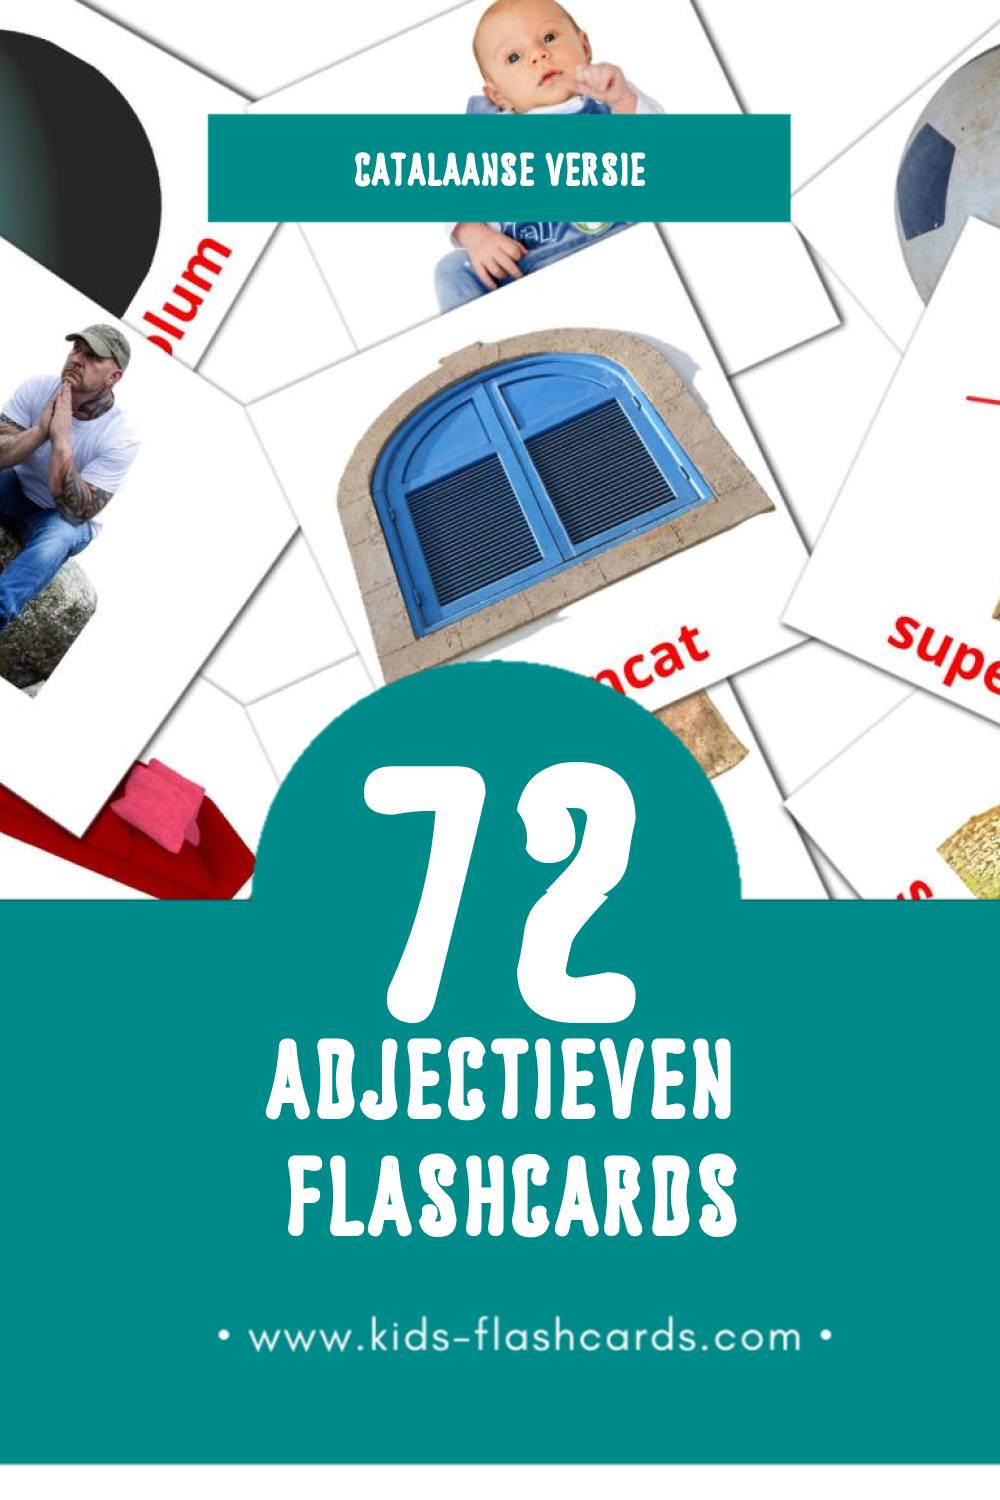 Visuele Adjectius Flashcards voor Kleuters (72 kaarten in het Catalaans)